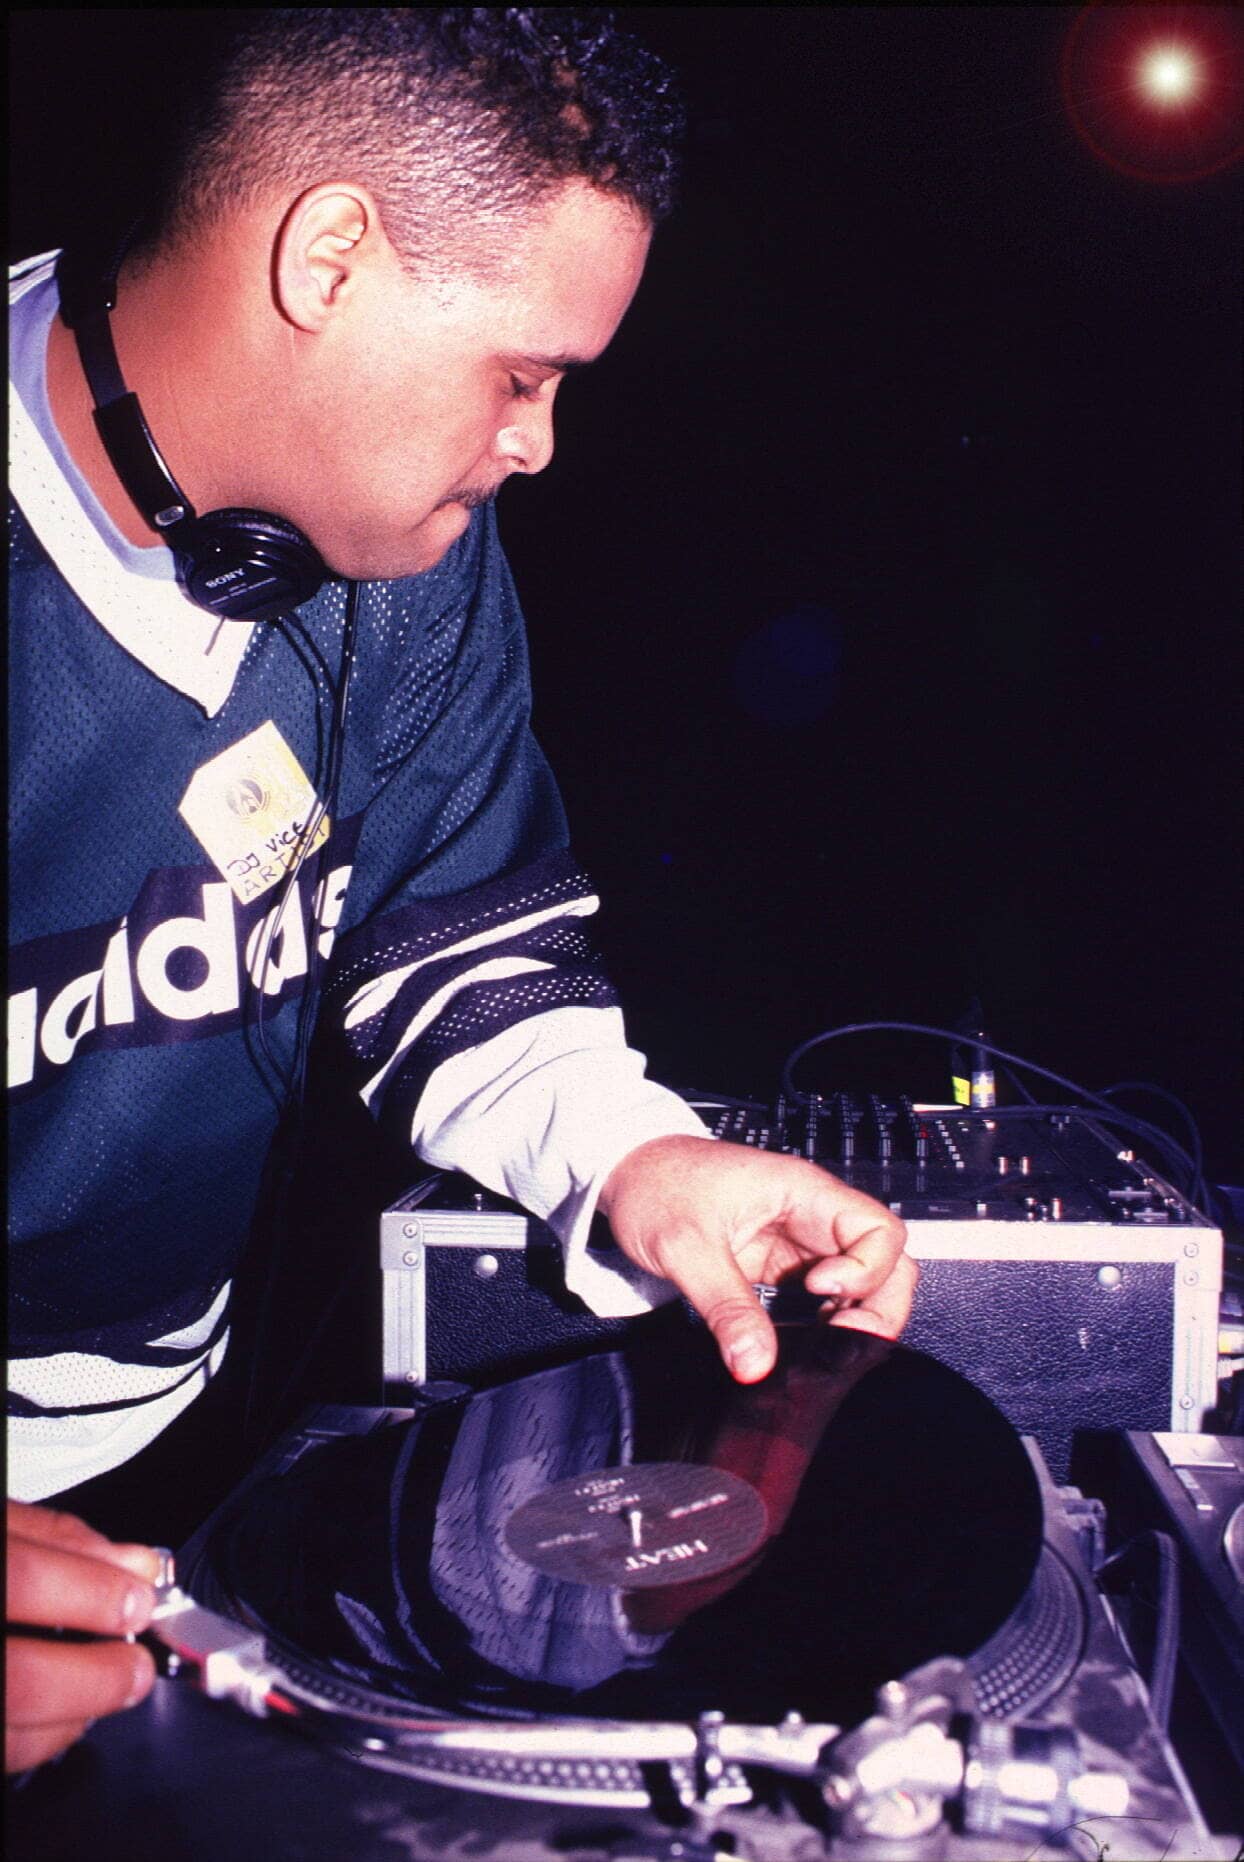 DJ Vice 1996 in Detroit. Legt er Musik auf? Oder erschafft er neue Musik mit seinen Instrumenten, den Turntables?